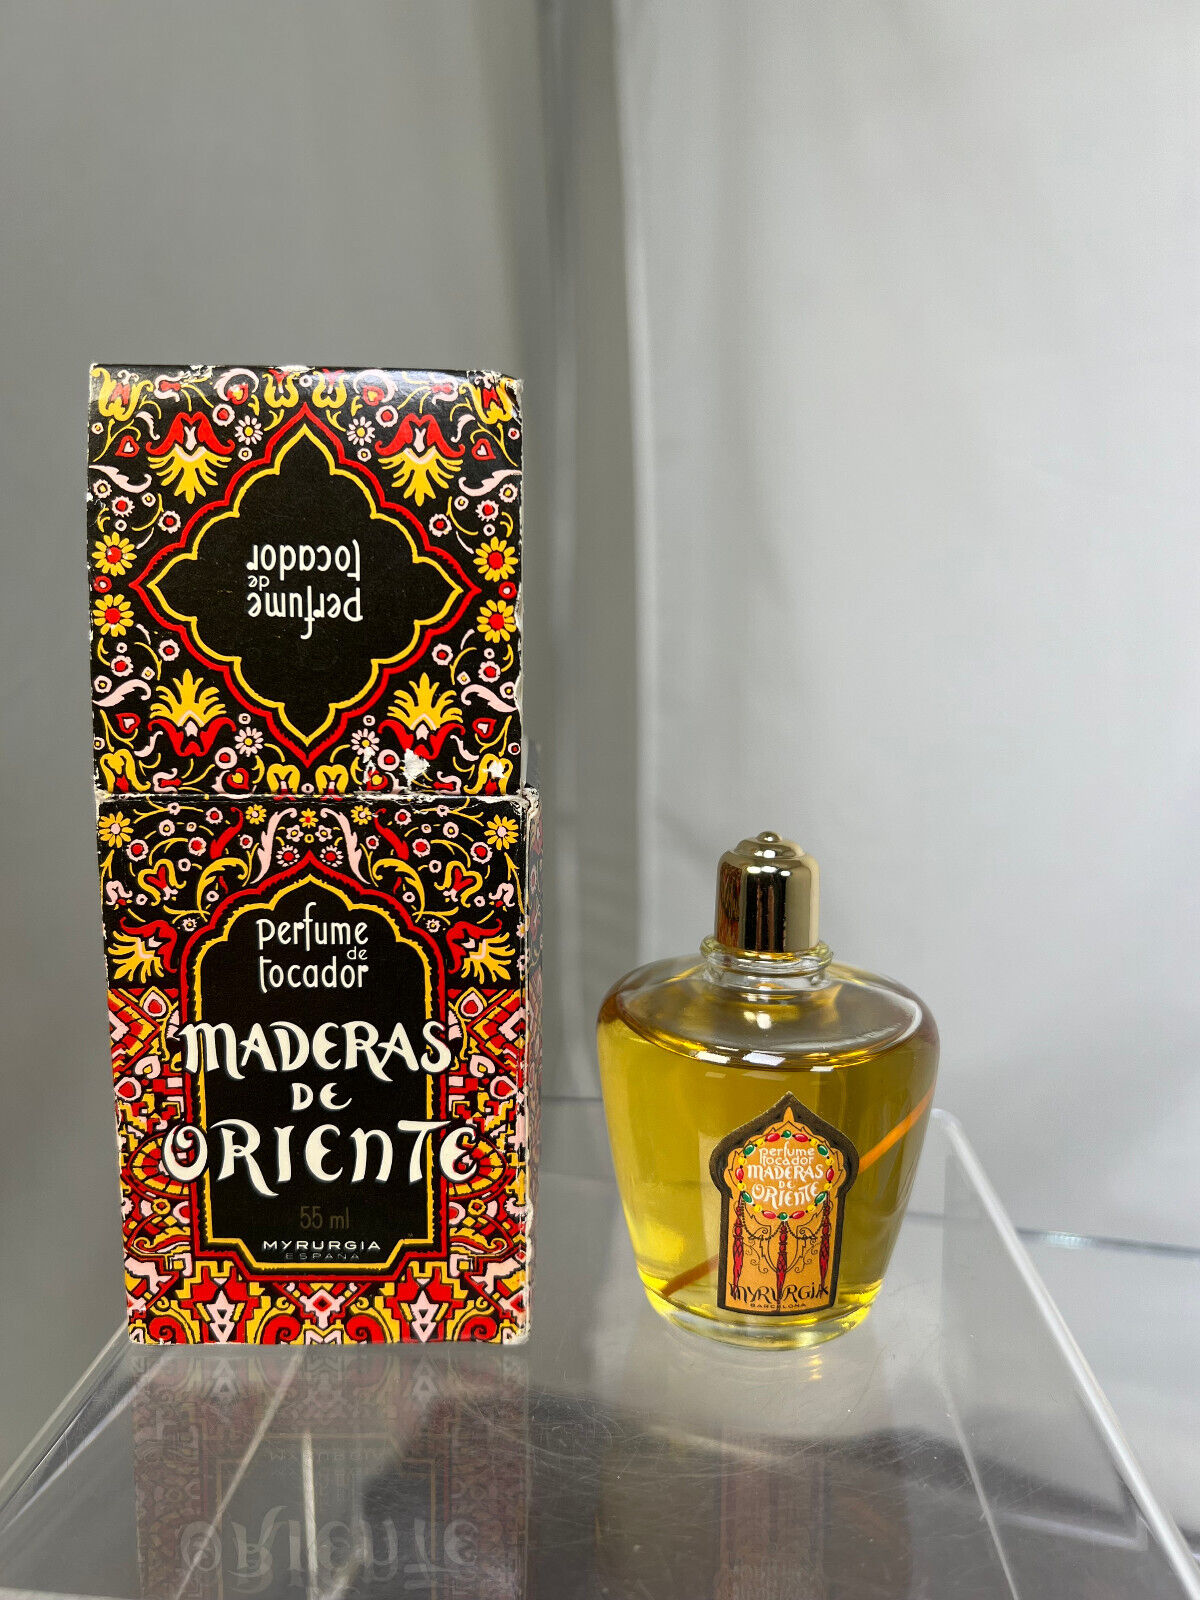 Vintage Maderas De Oriente by Myrurgia 55ml Perfume de tocador Spain w BOX Full